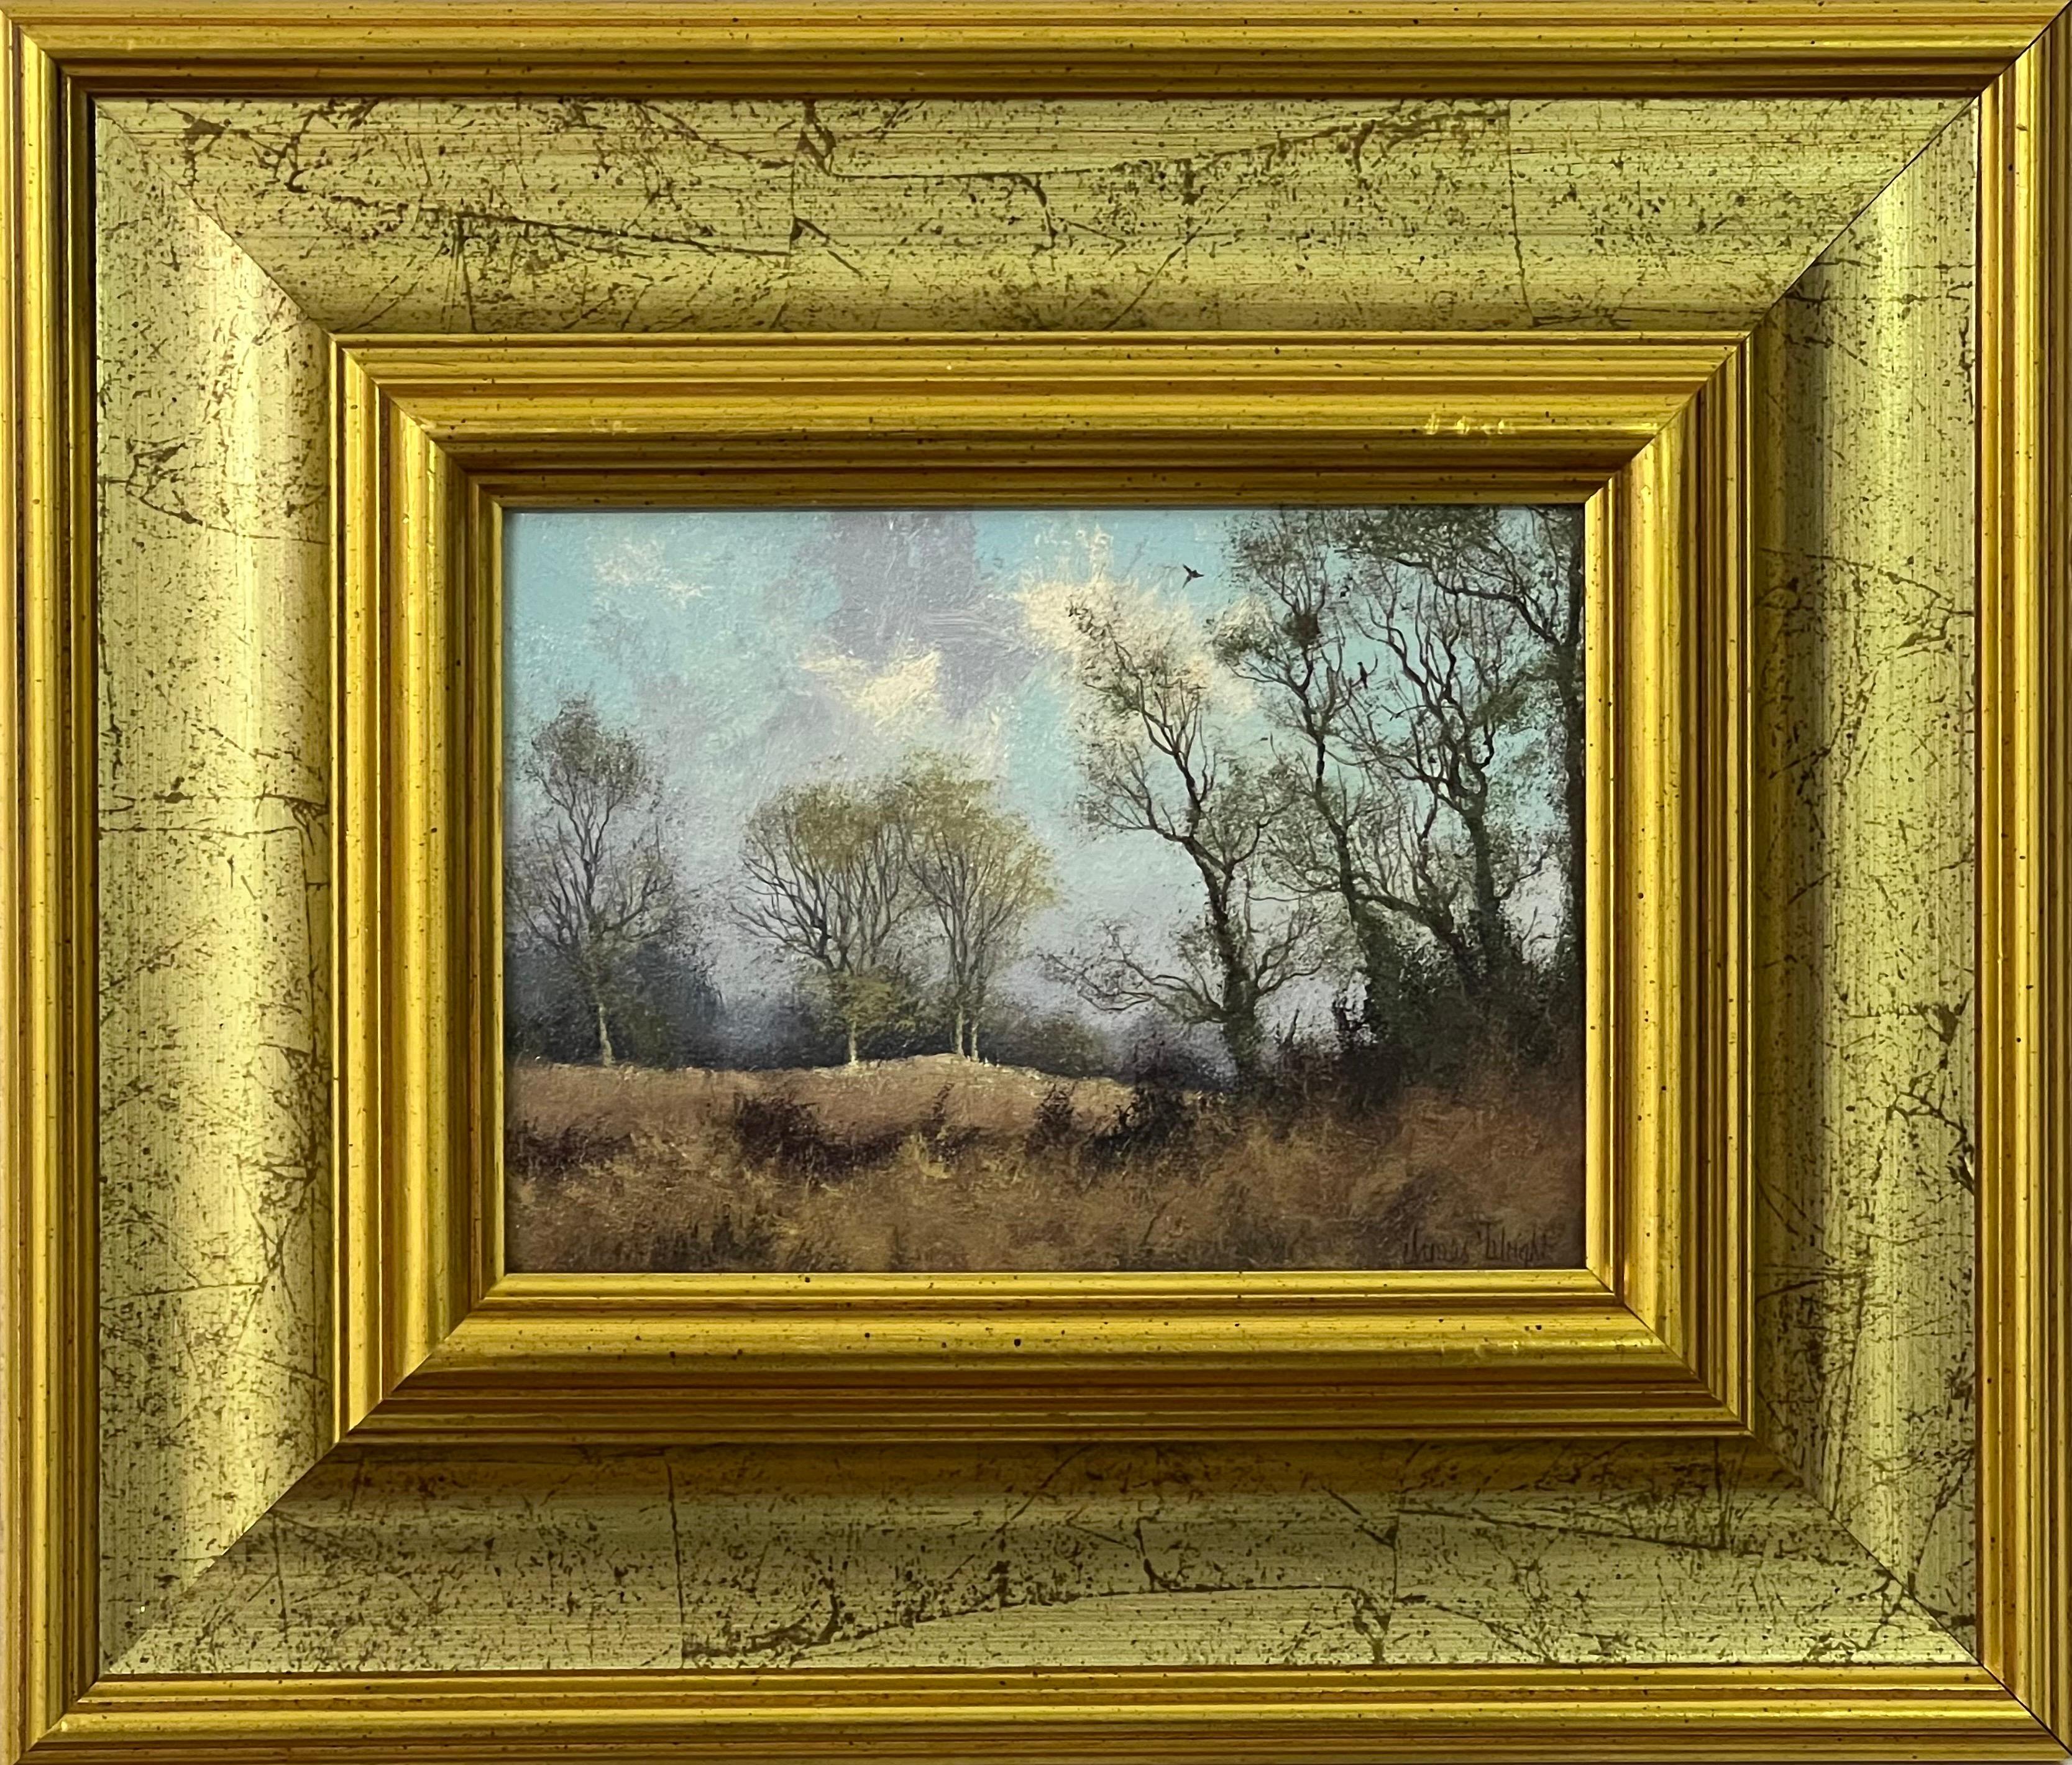 James Wright Landscape Painting – Gemälde von Waldbäumen in der englischen Landschaft des 20. Jahrhunderts